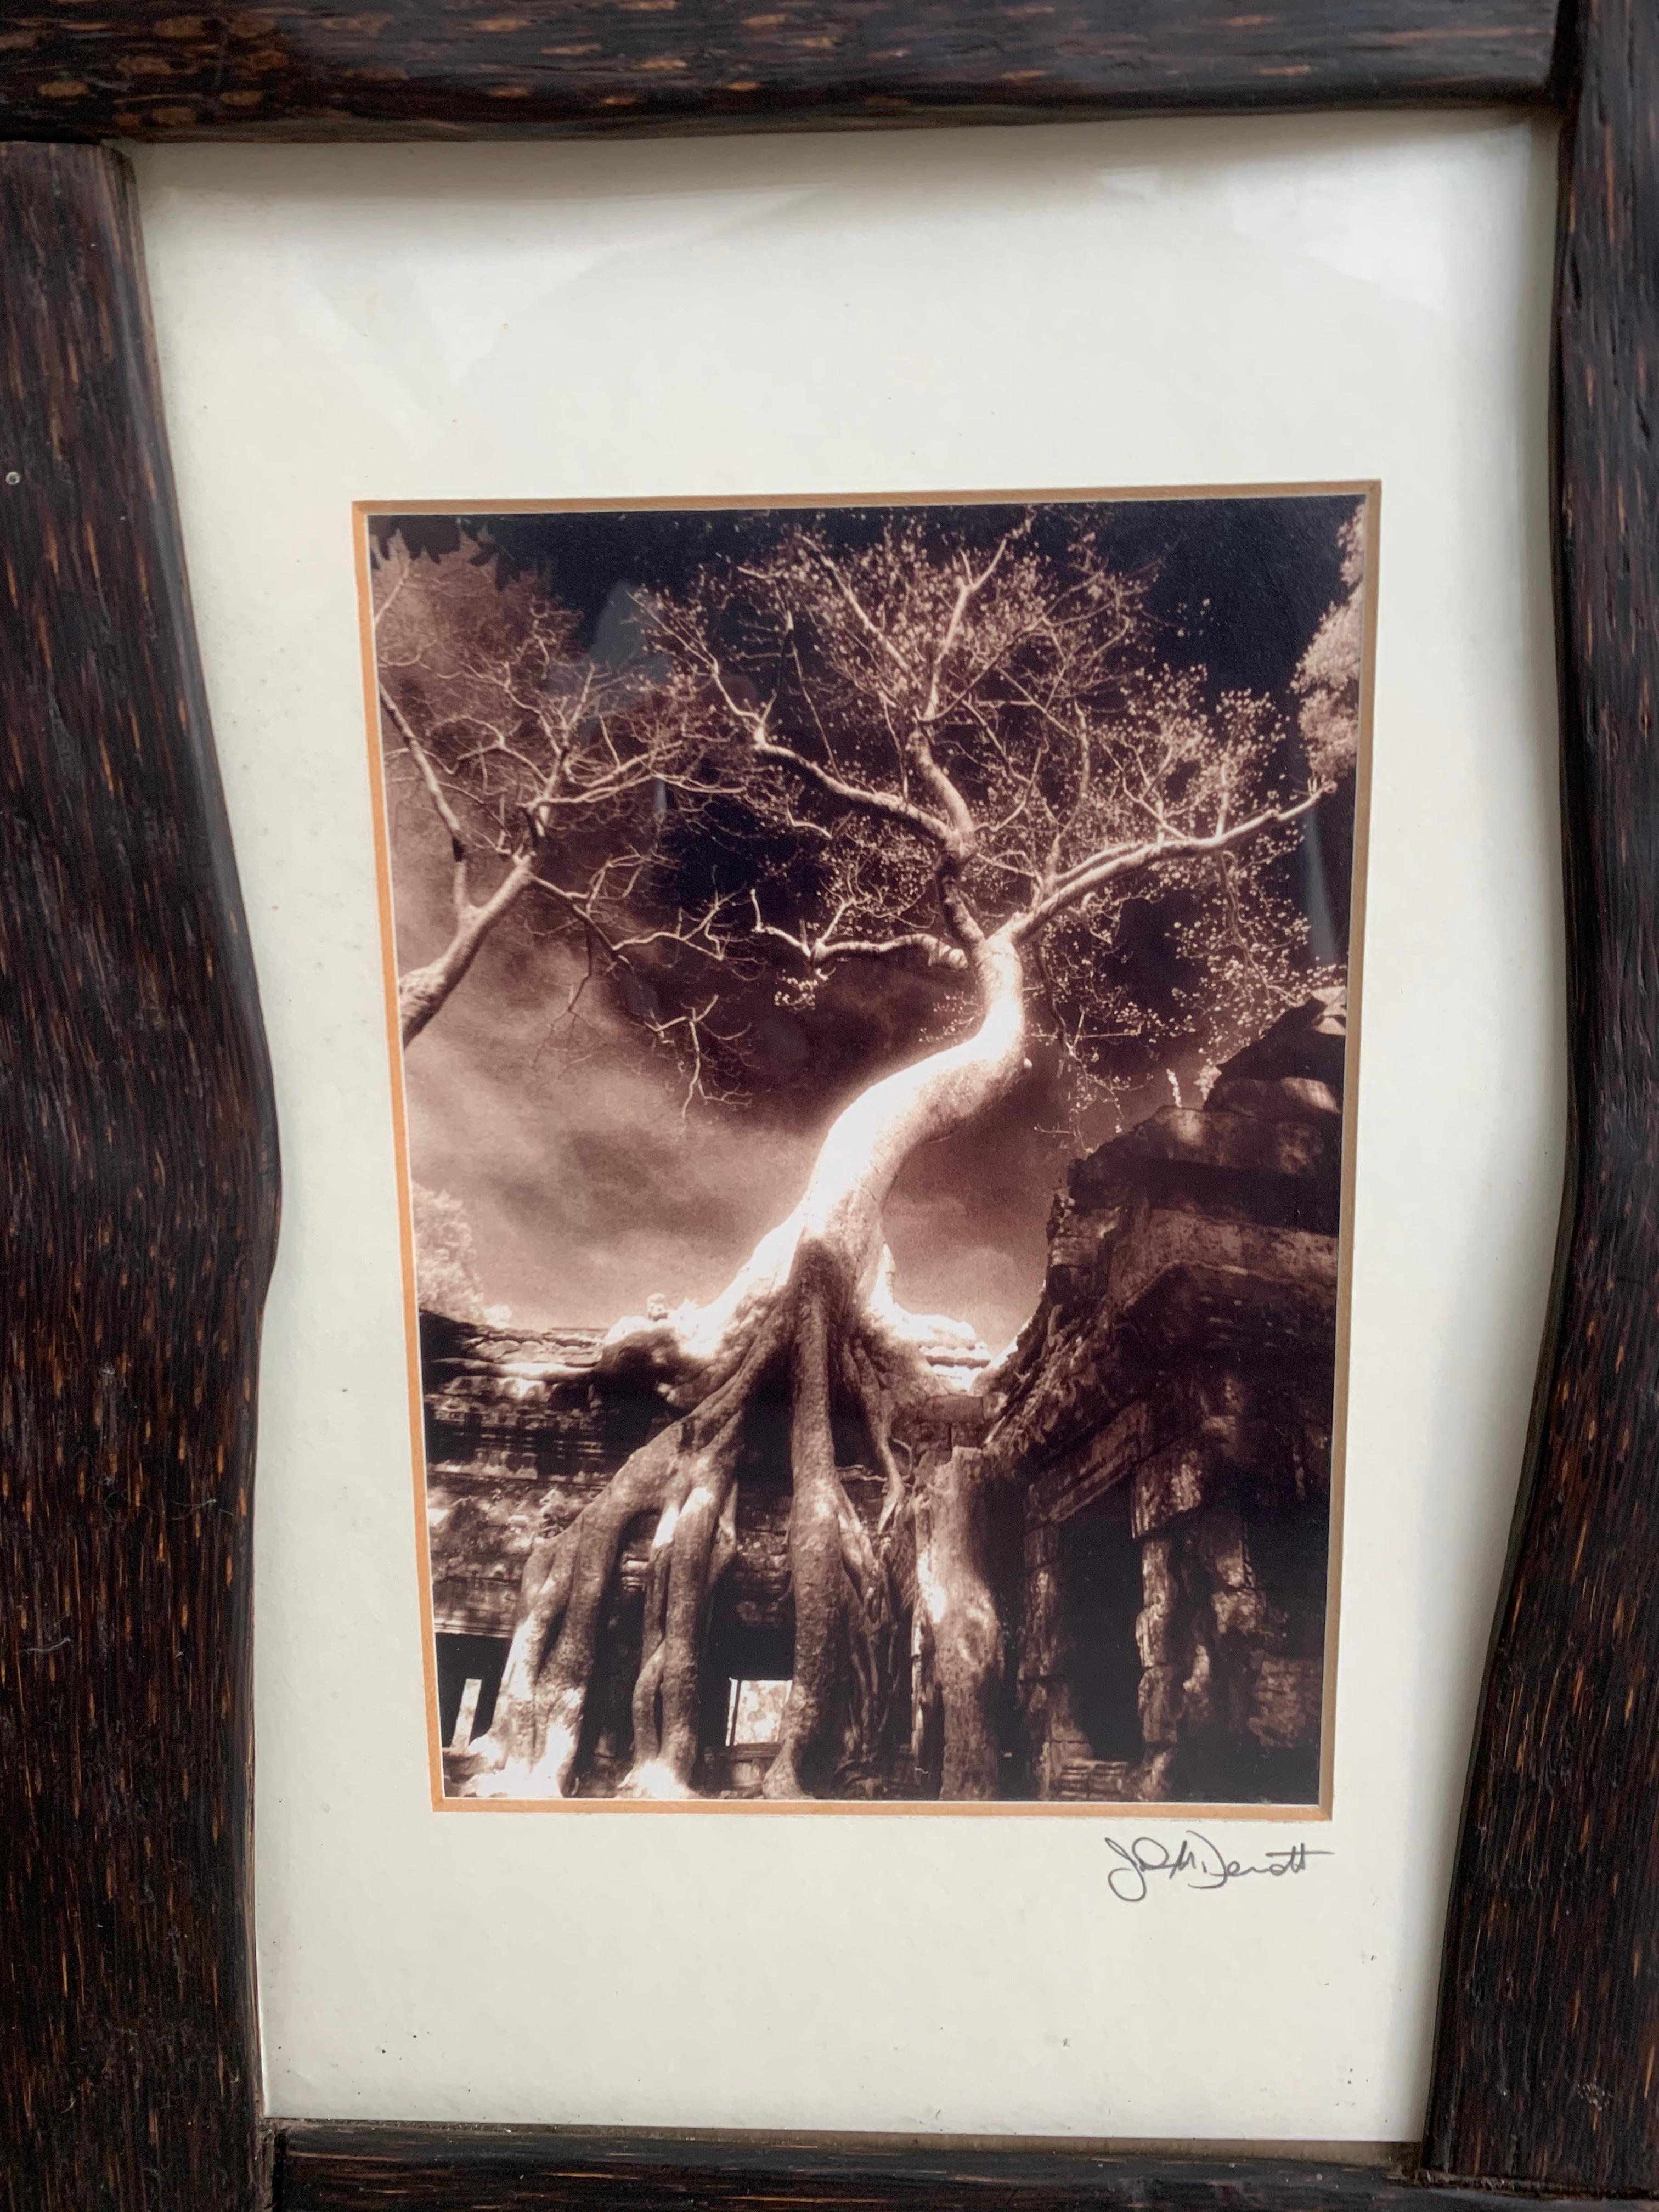 Ein Vintage-Foto aus Kambodscha, gerahmt in einem Rahmen aus Palmenholz und Glas.

Abmessungen: Höhe 38cm x Breite 27cm x Tiefe 0,05cm.
 